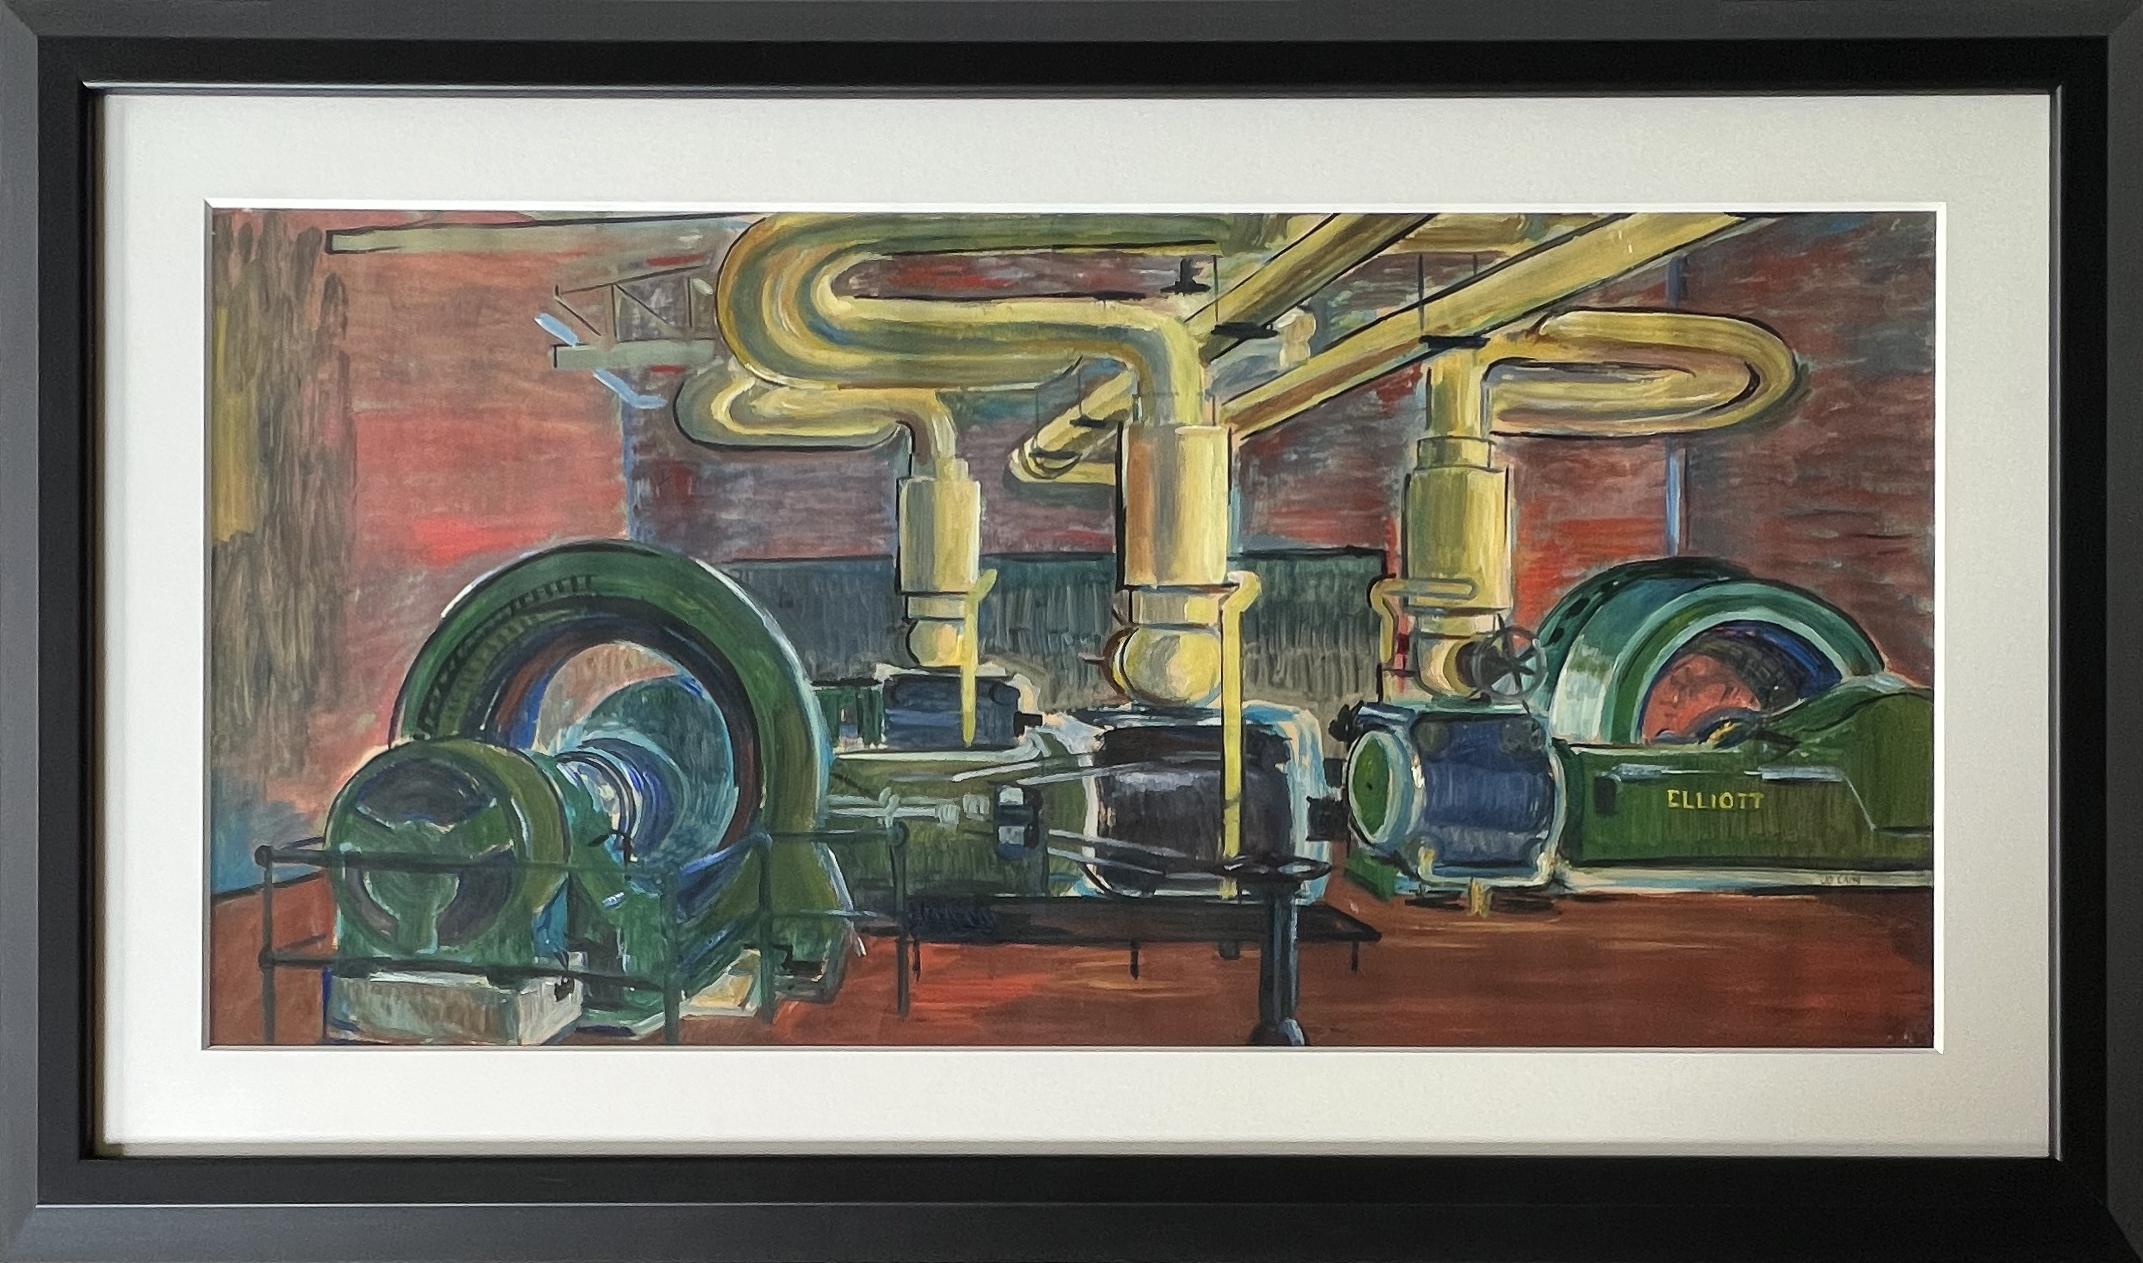 Machine Age Industrial WPA Era Industries Scène américaine Réalisme social Milieu du 20e siècle - Art de Jo Cain